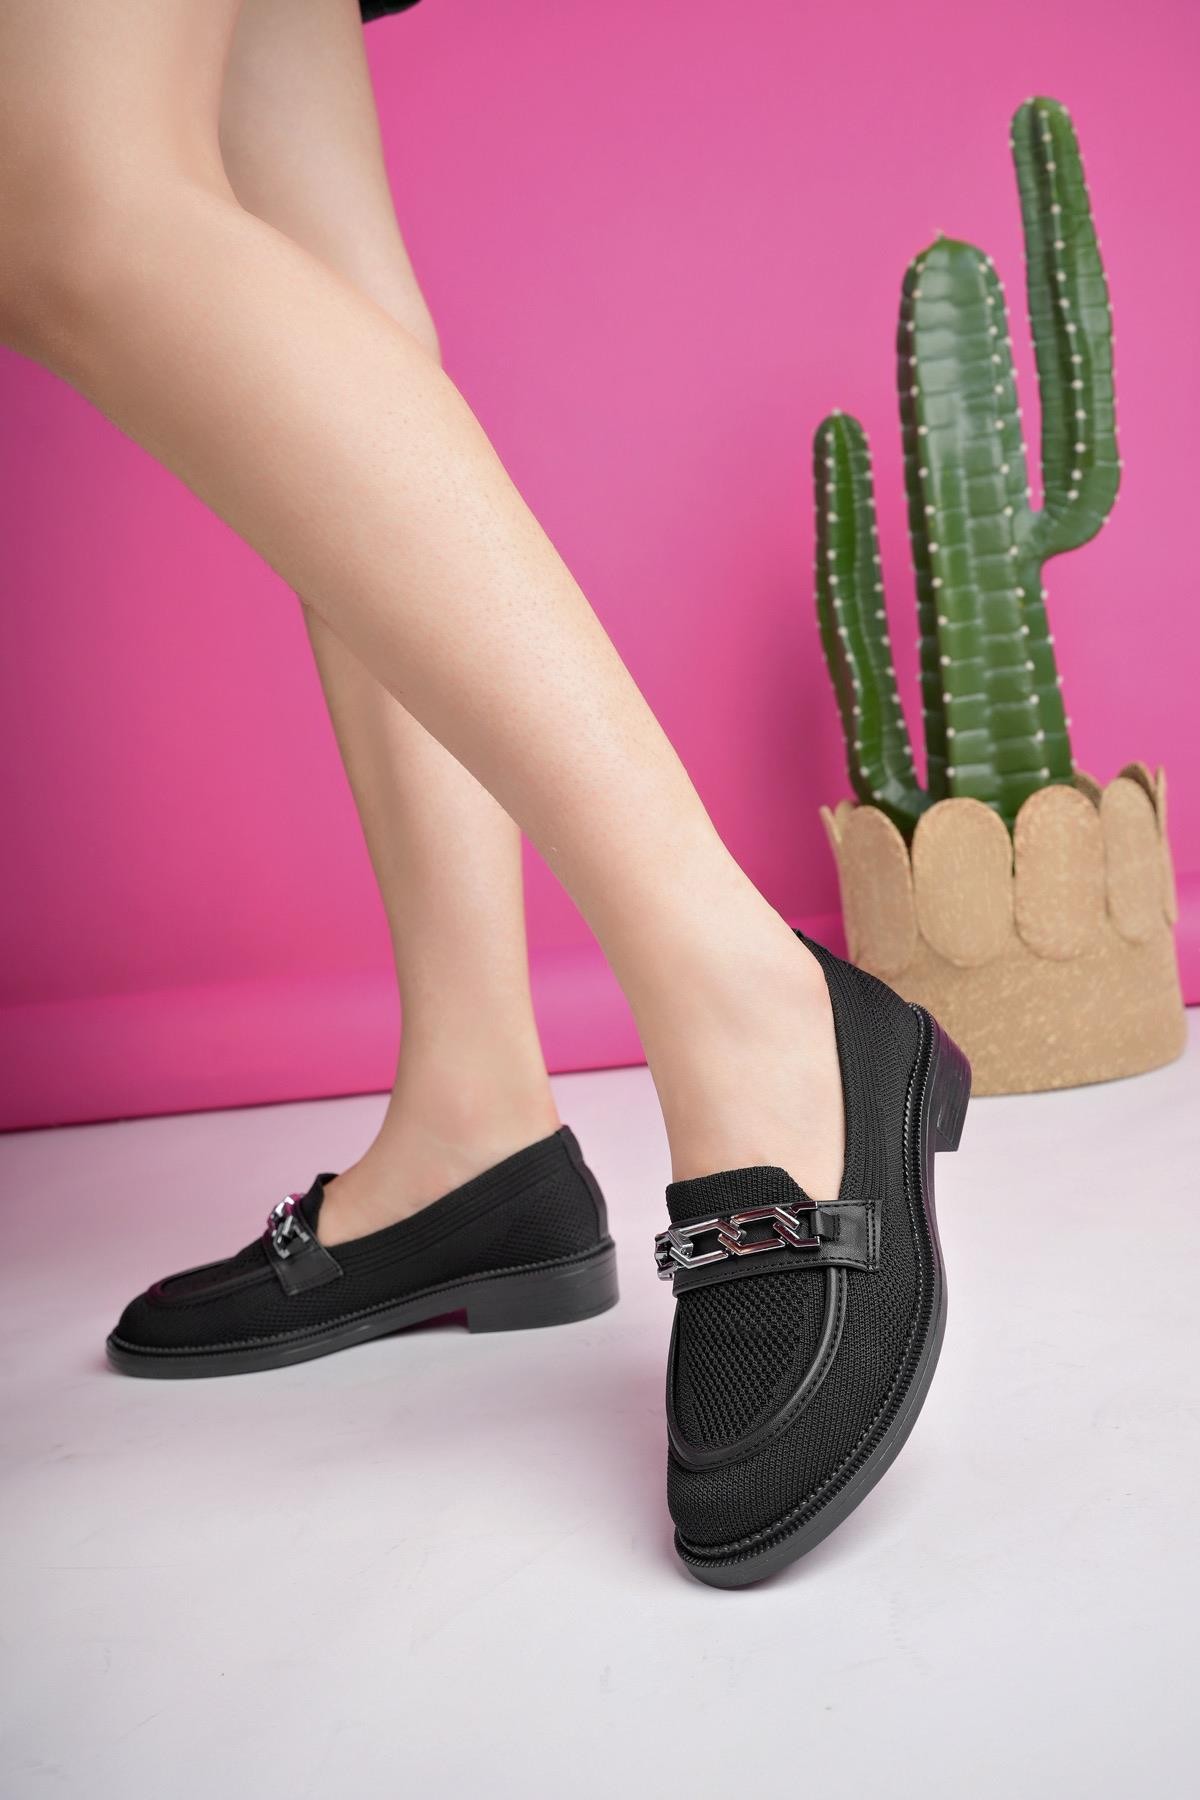 Muggo VİOLA Garantili Triko Metal Tokalı Kadın Loafer Günlük Ayakkabı